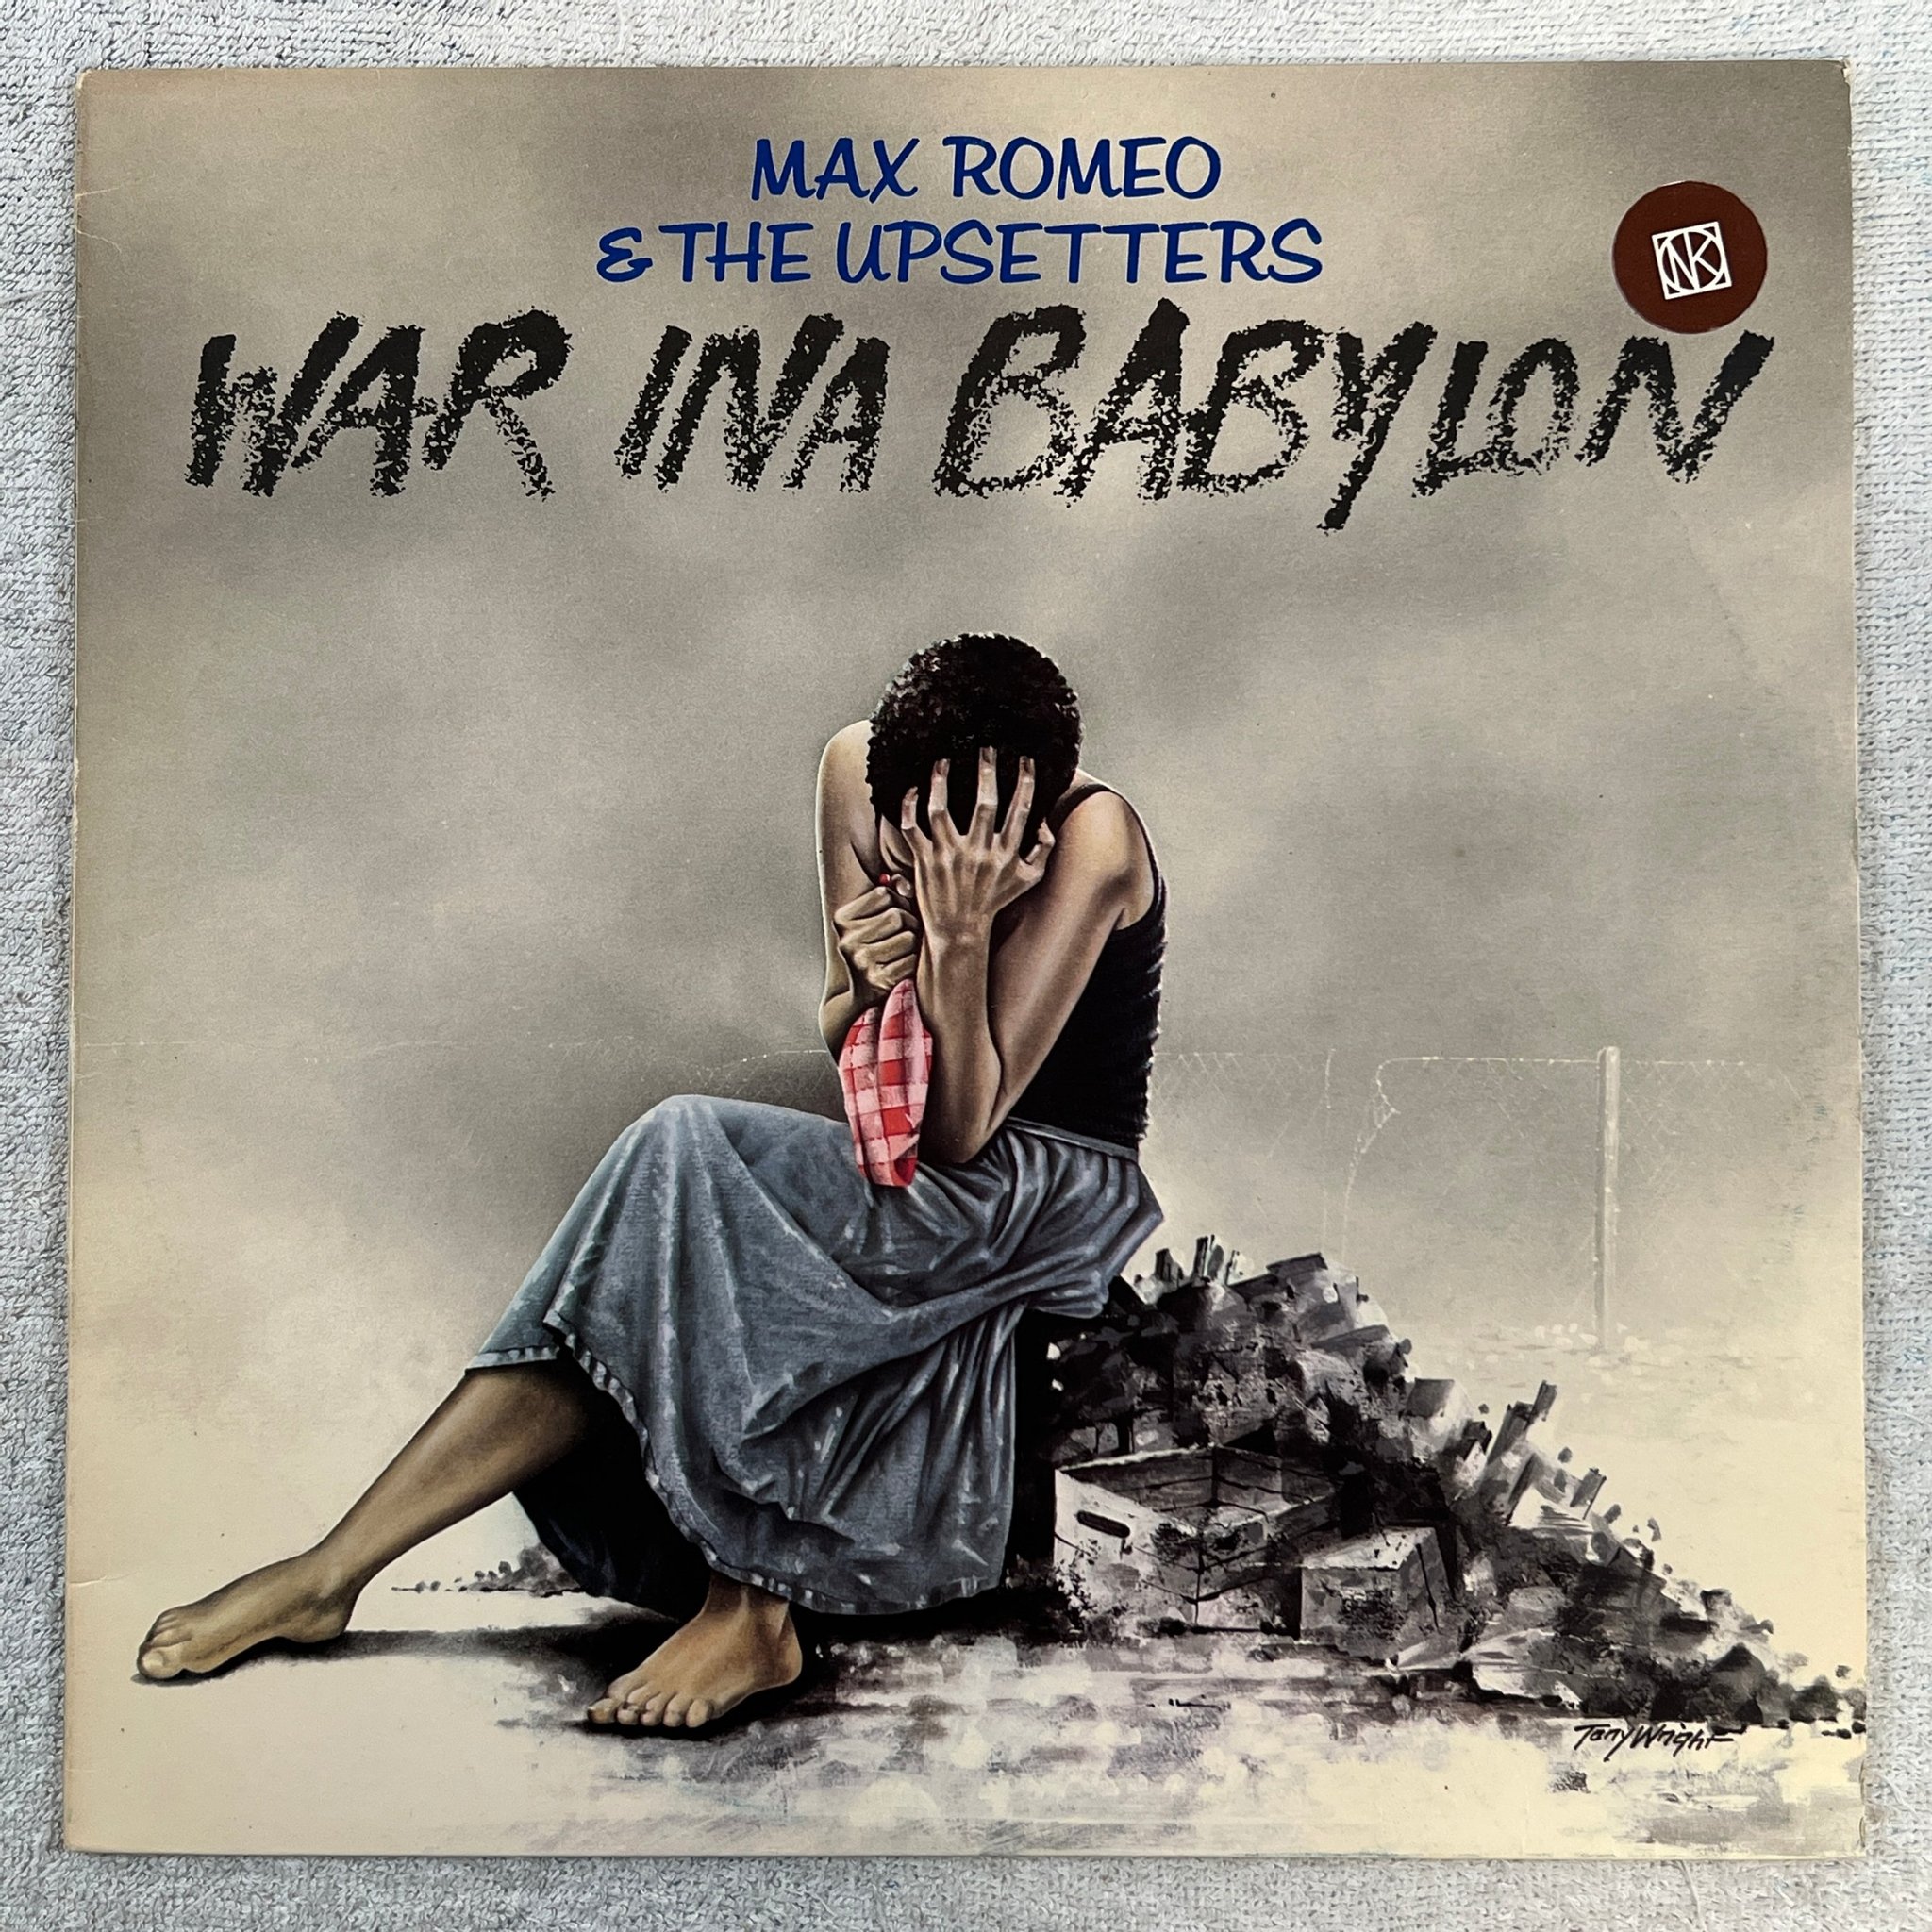 Omslagsbild för skivan MAX ROMEO war ina Babylon LP UK ISLAND ILPS 9392